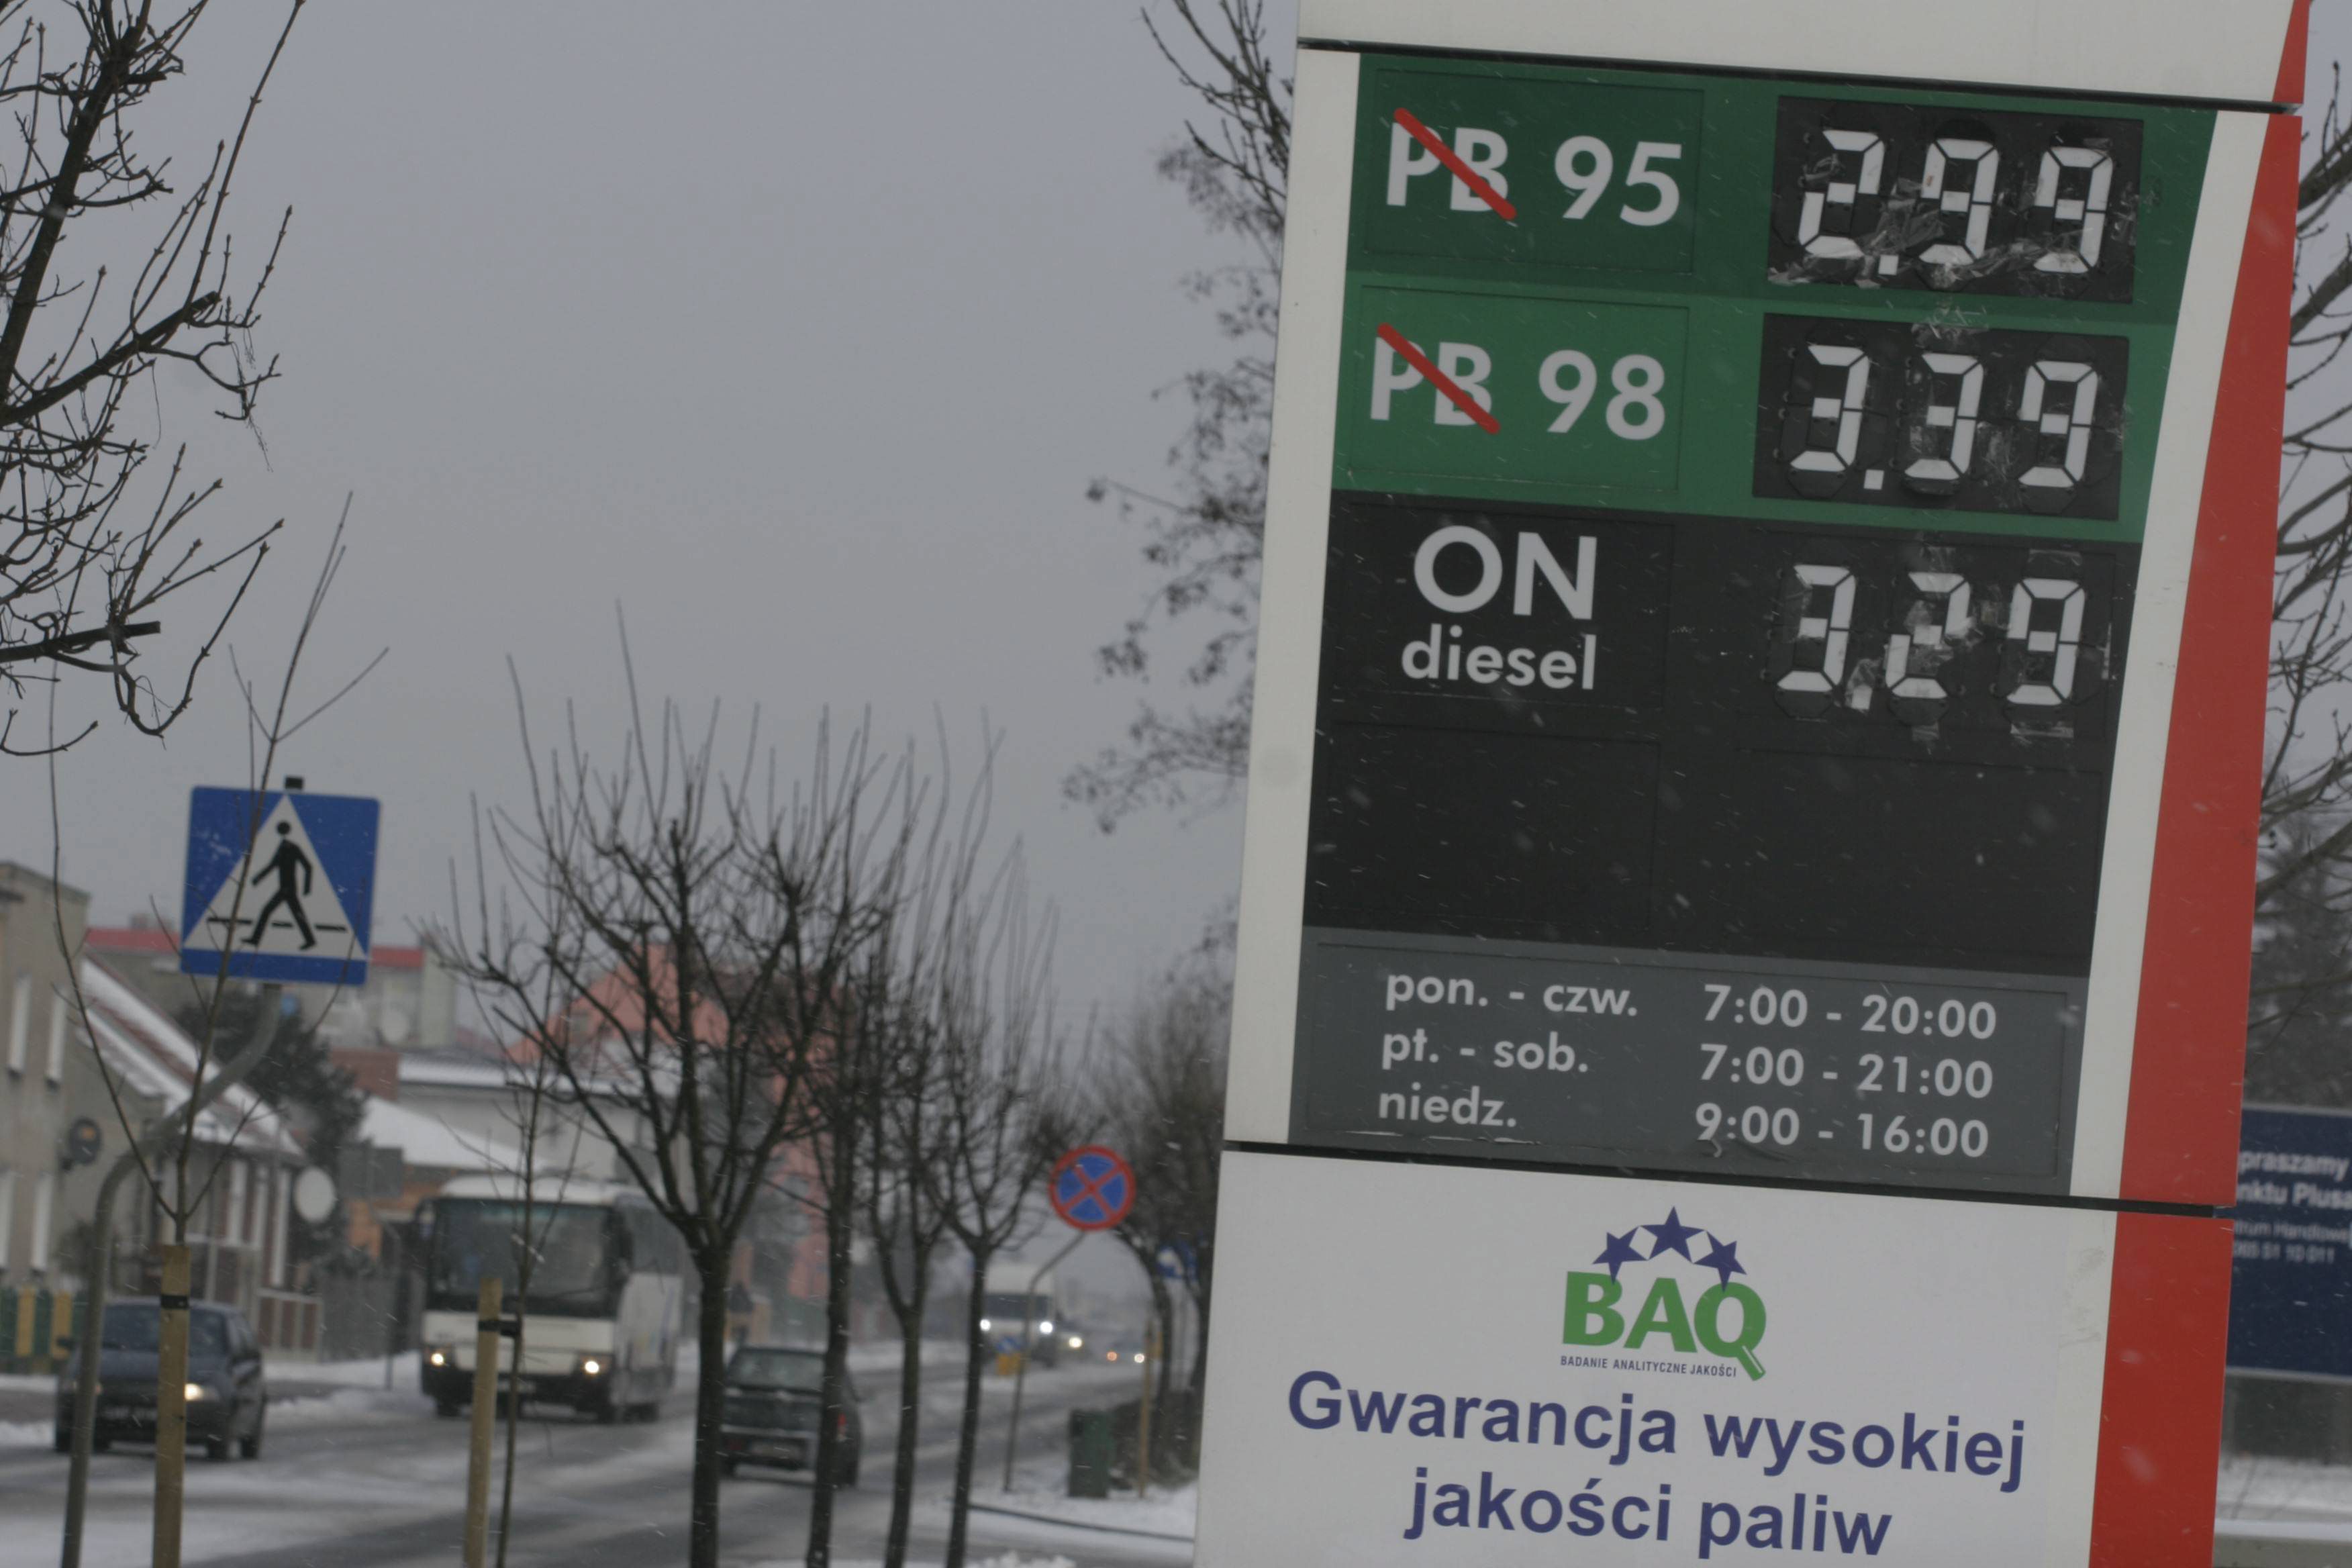 Tusk zgadzał się na paliwo po 7 zł? Hofman tankował drogą benzynę na pokaz.  Przegląd cen od 2005 roku - Dziennik.pl